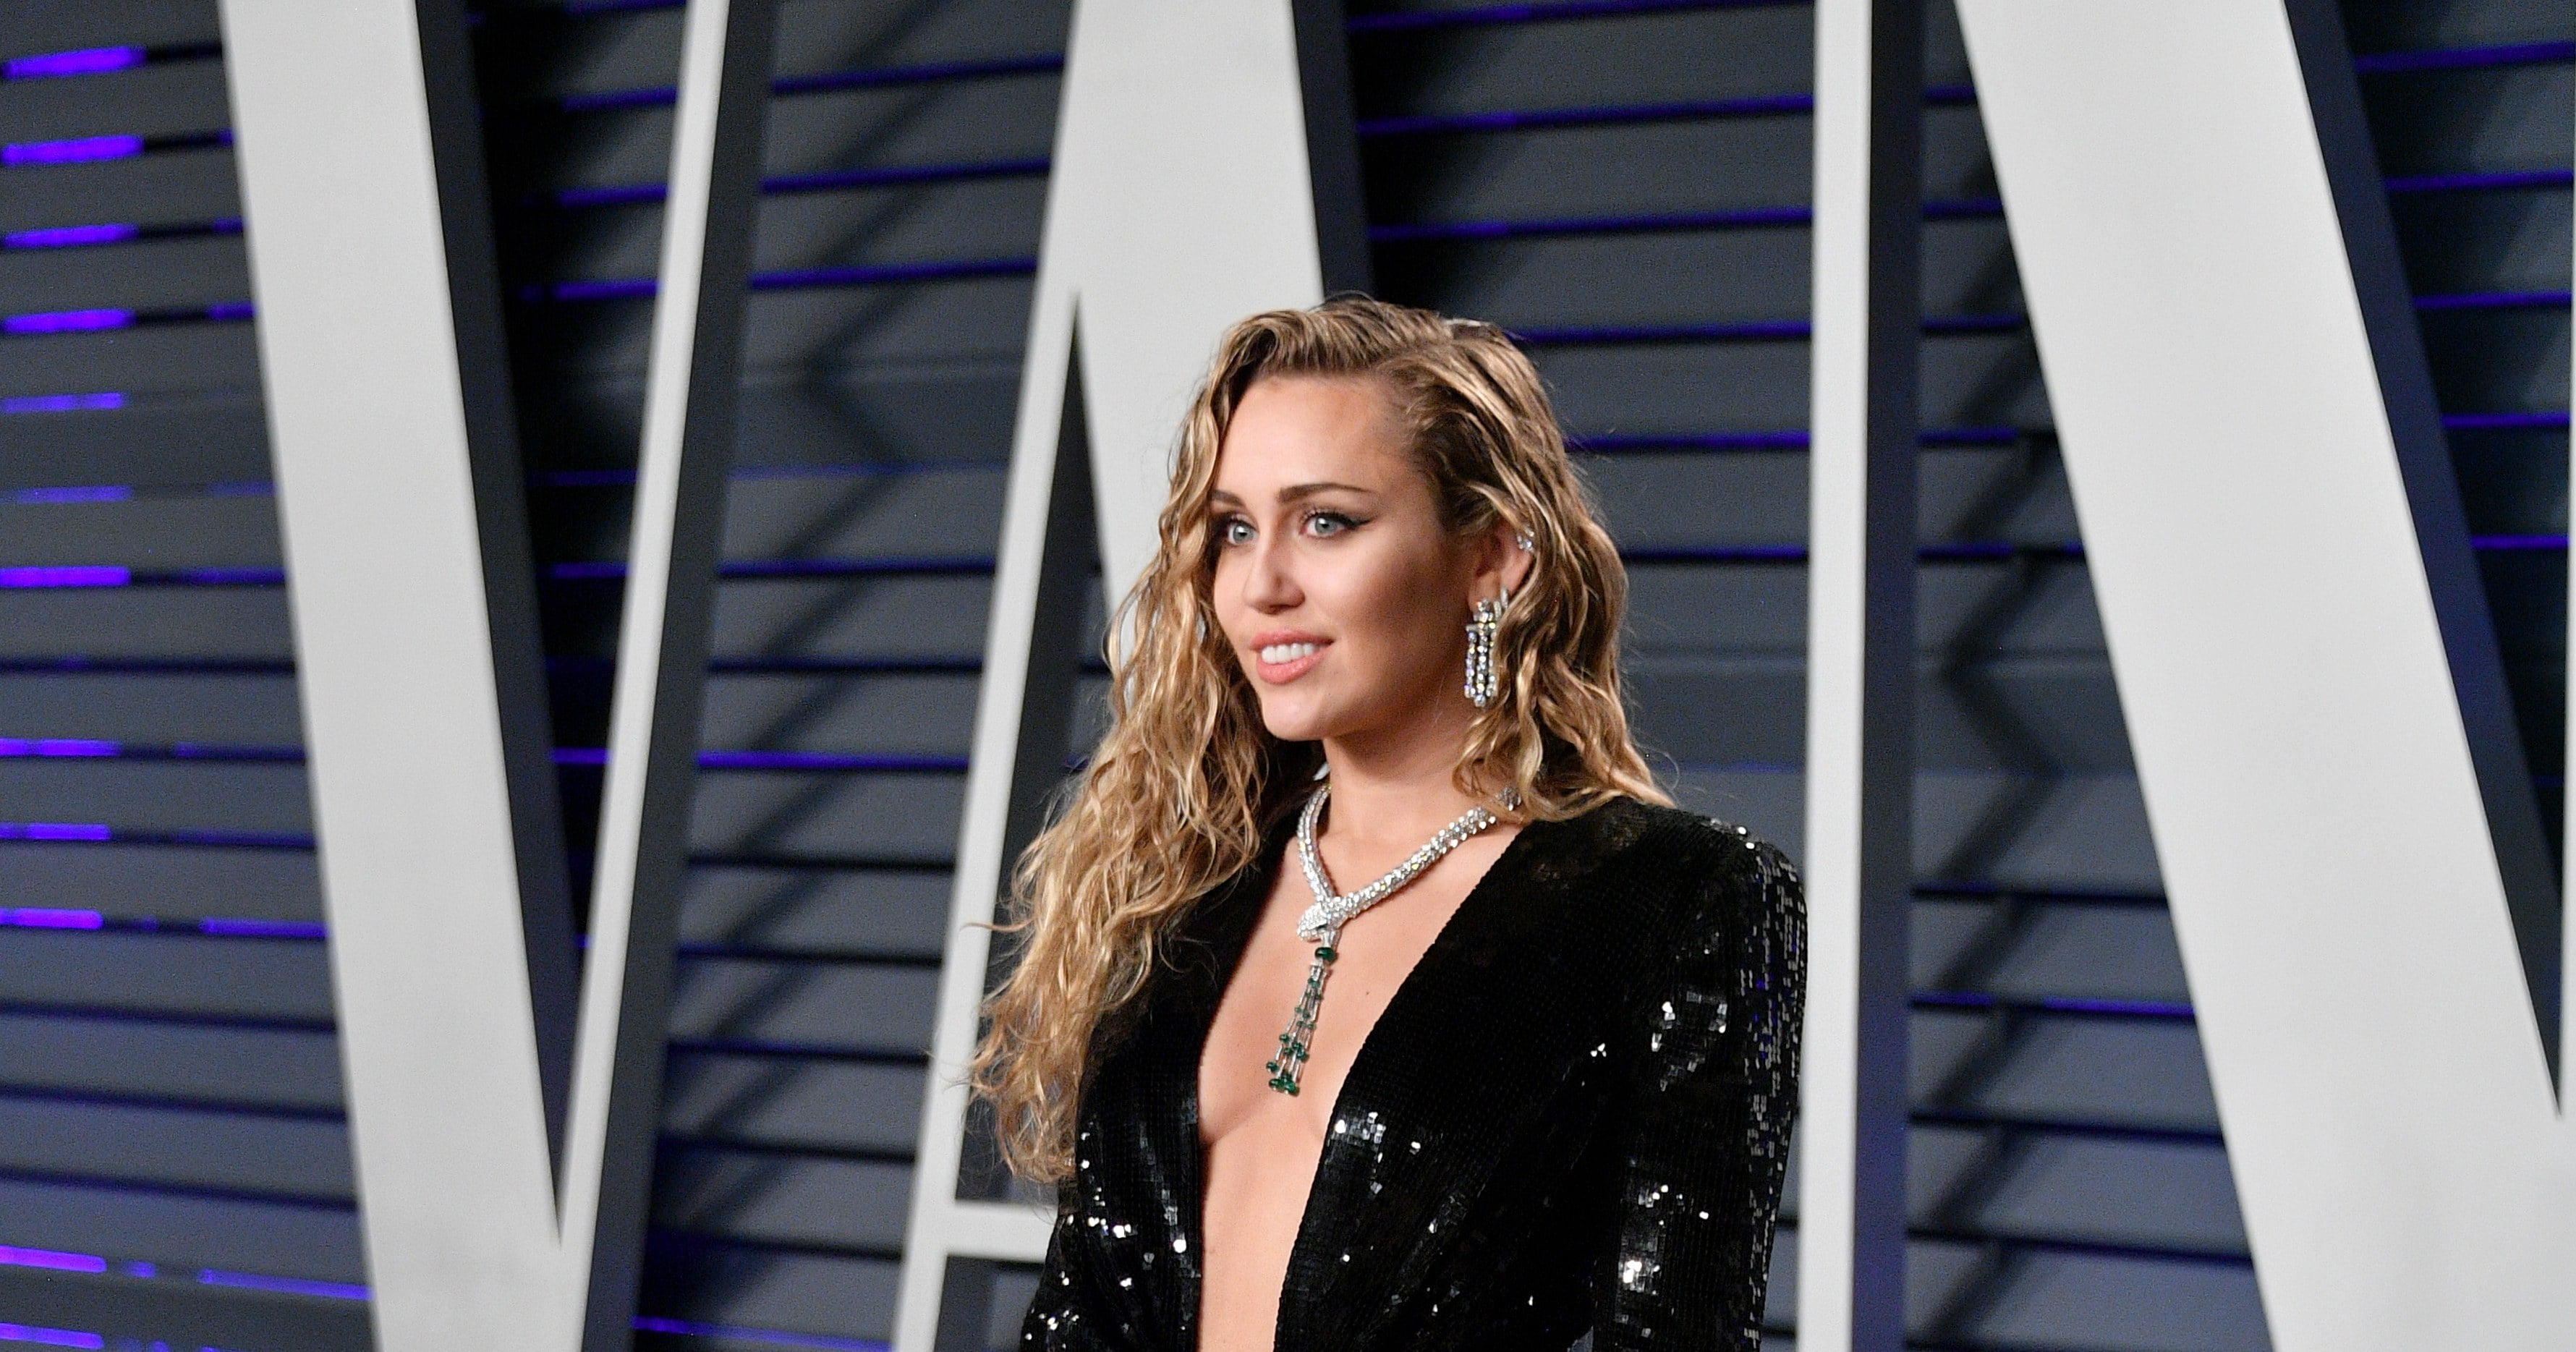 Miley Cyrus Vanity Fair Oscar Party Dress 2019 Popsugar Fashion 6070